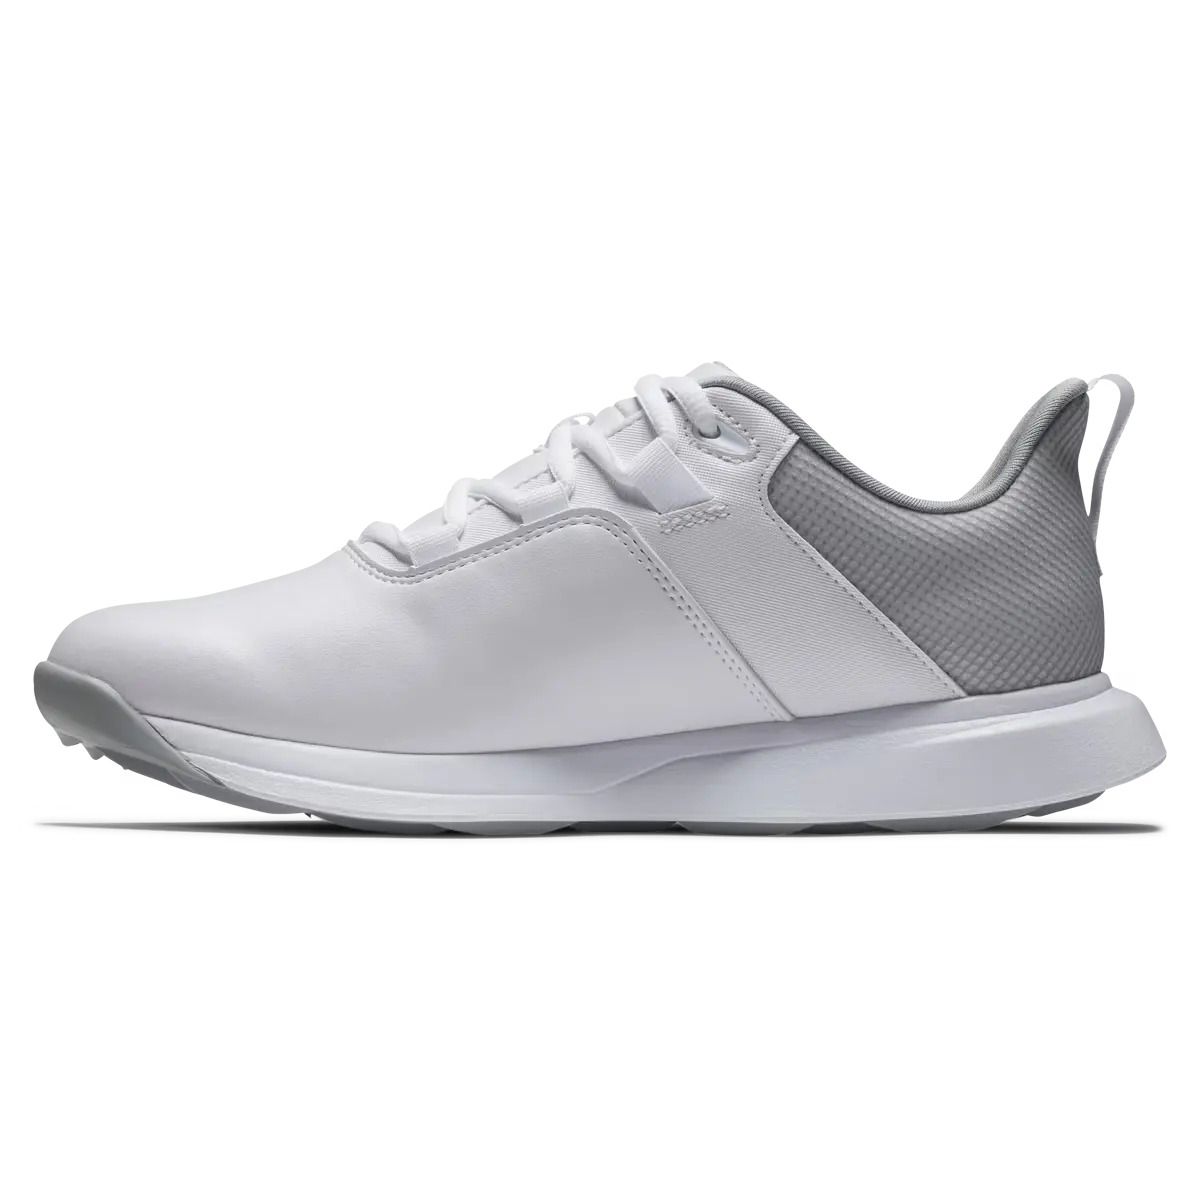 Women's ProLite Golf Shoes White/Grey 